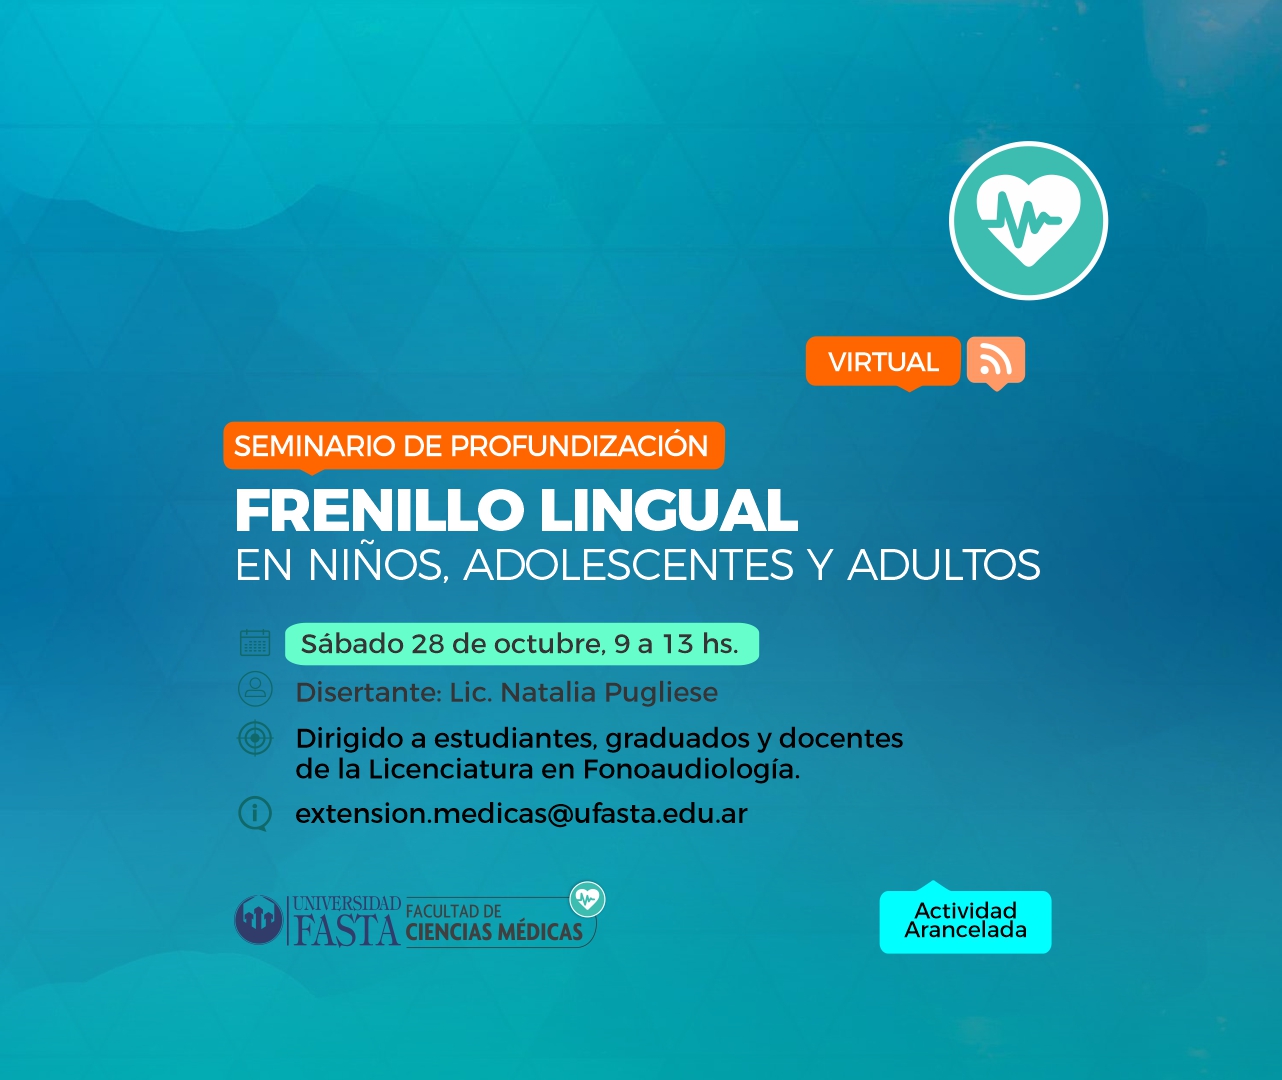 Seminario de Profundización "Frenillo lingual en niños, adolescentes y adultos"